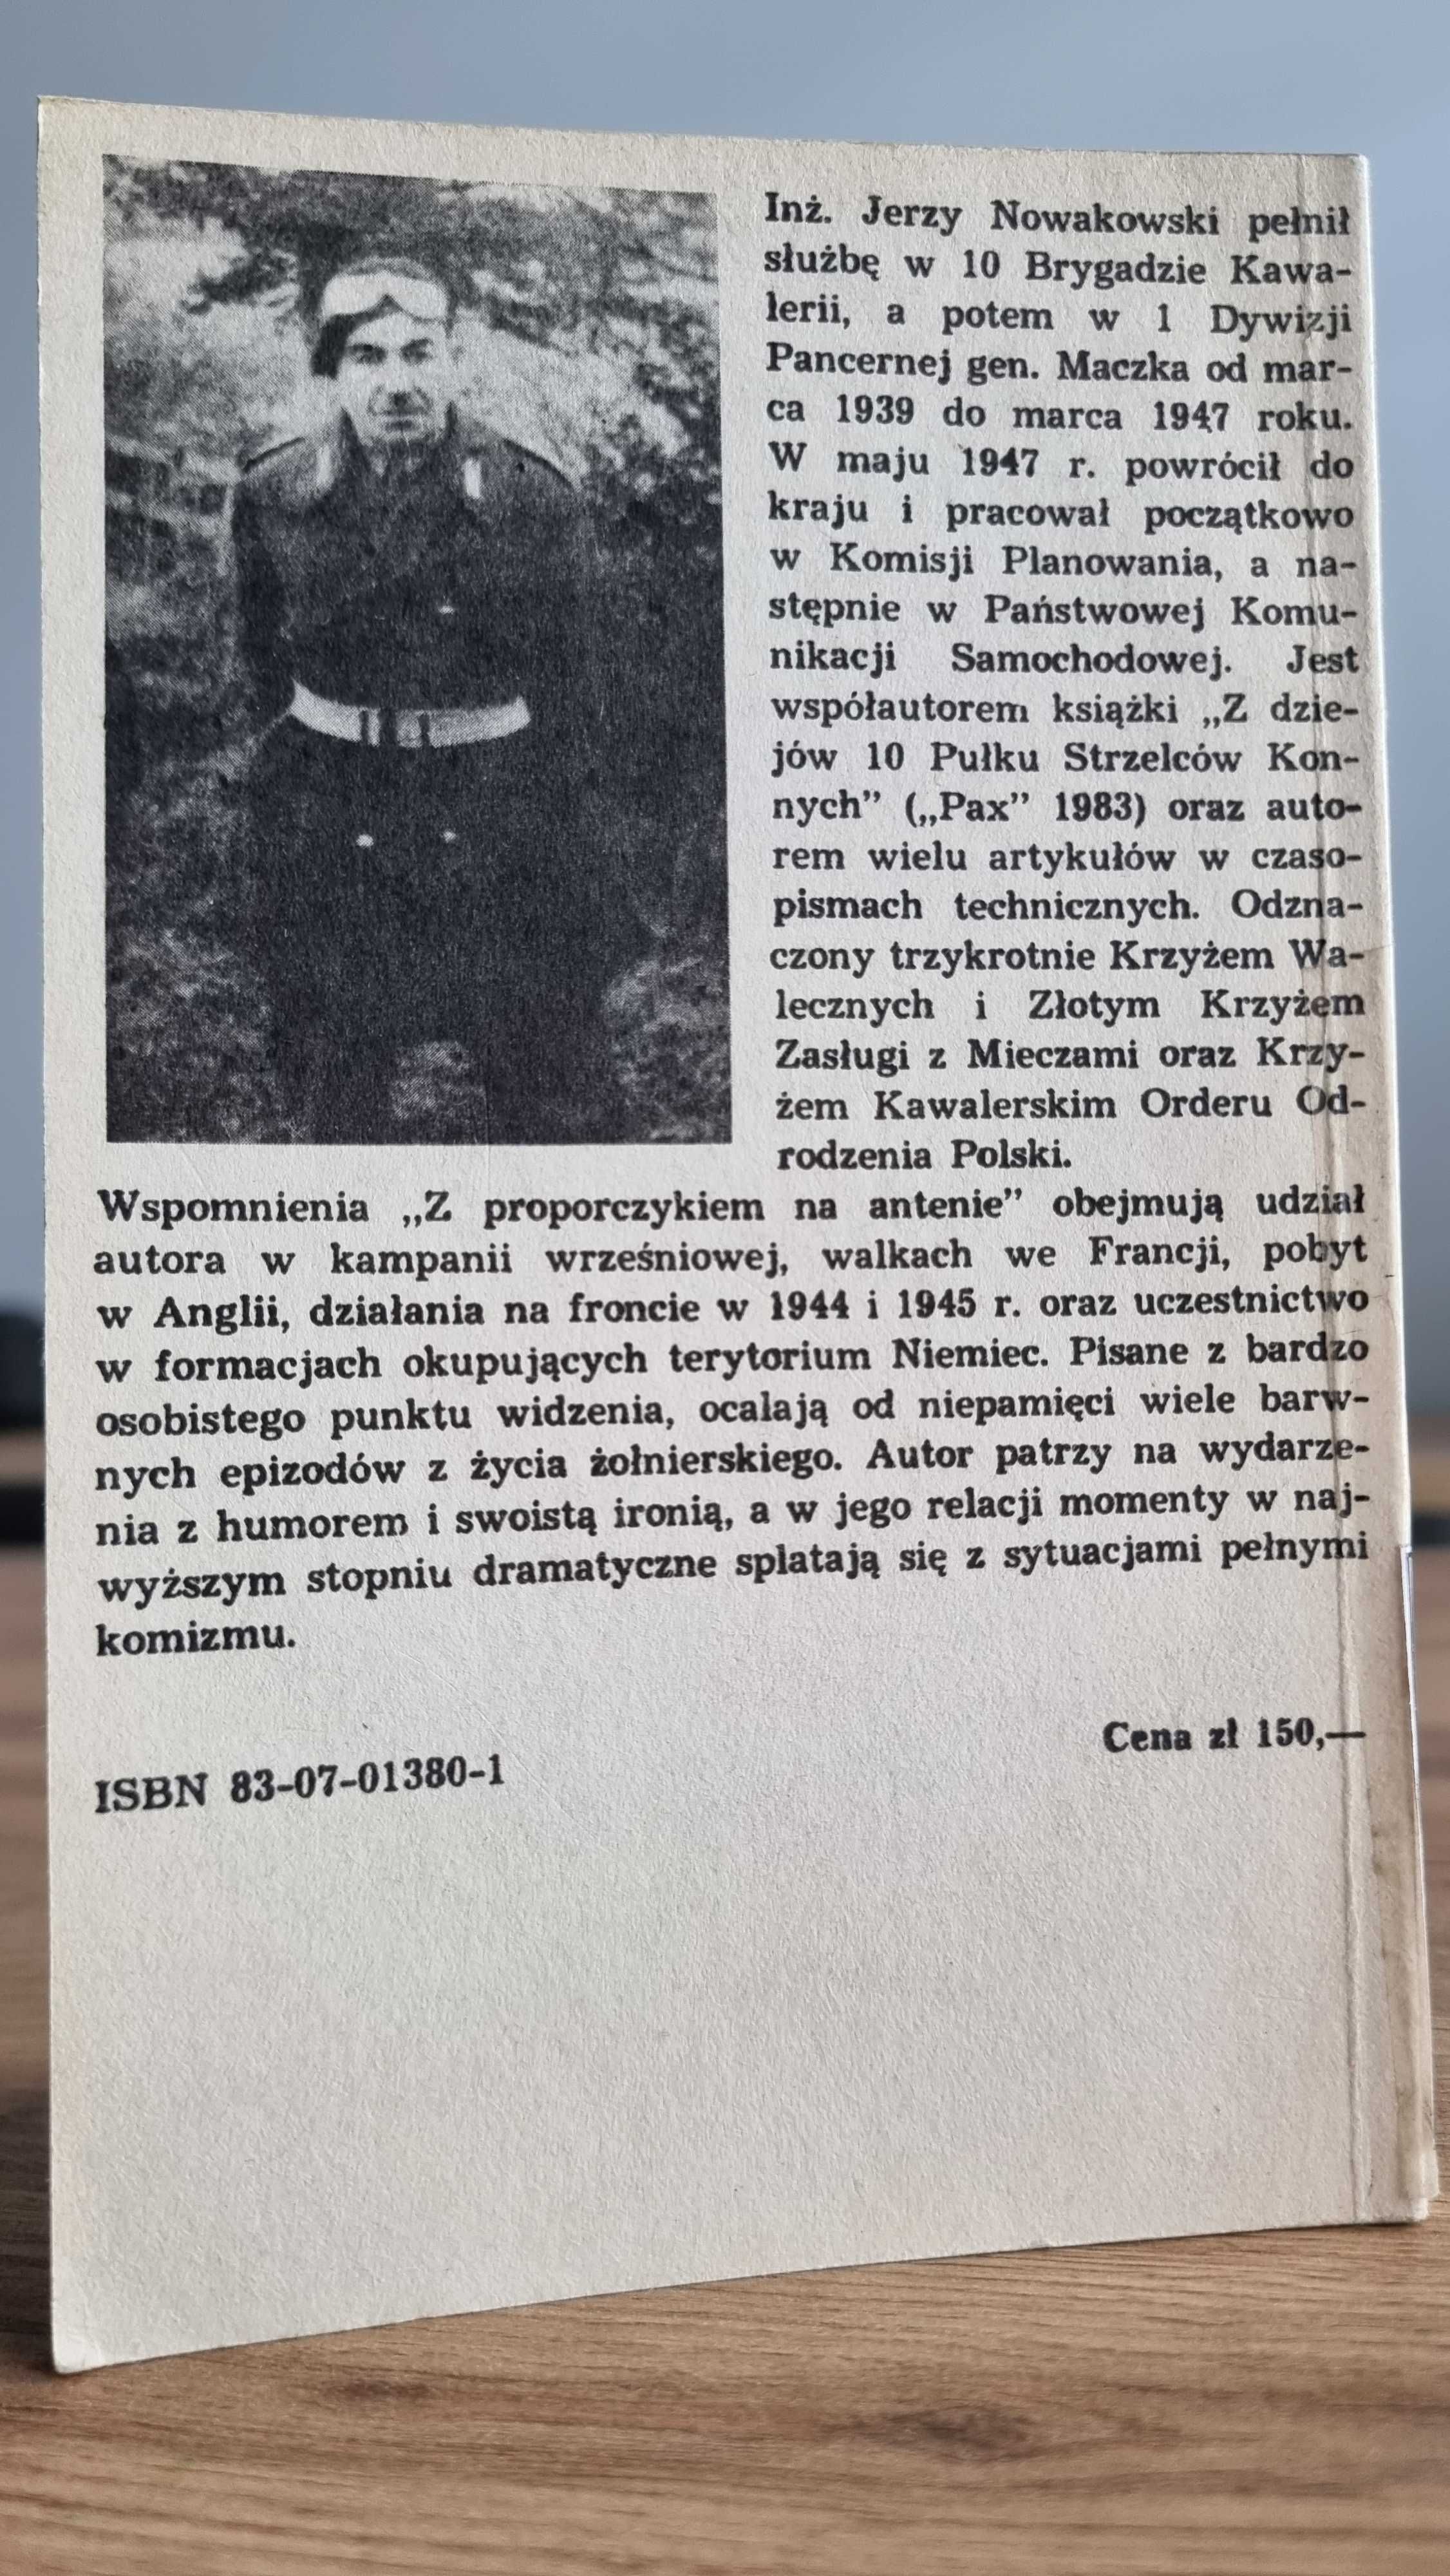 "Z proporczykiem na antenie" - Jerzy Nowakowski, Wydanie I z 1986 r.